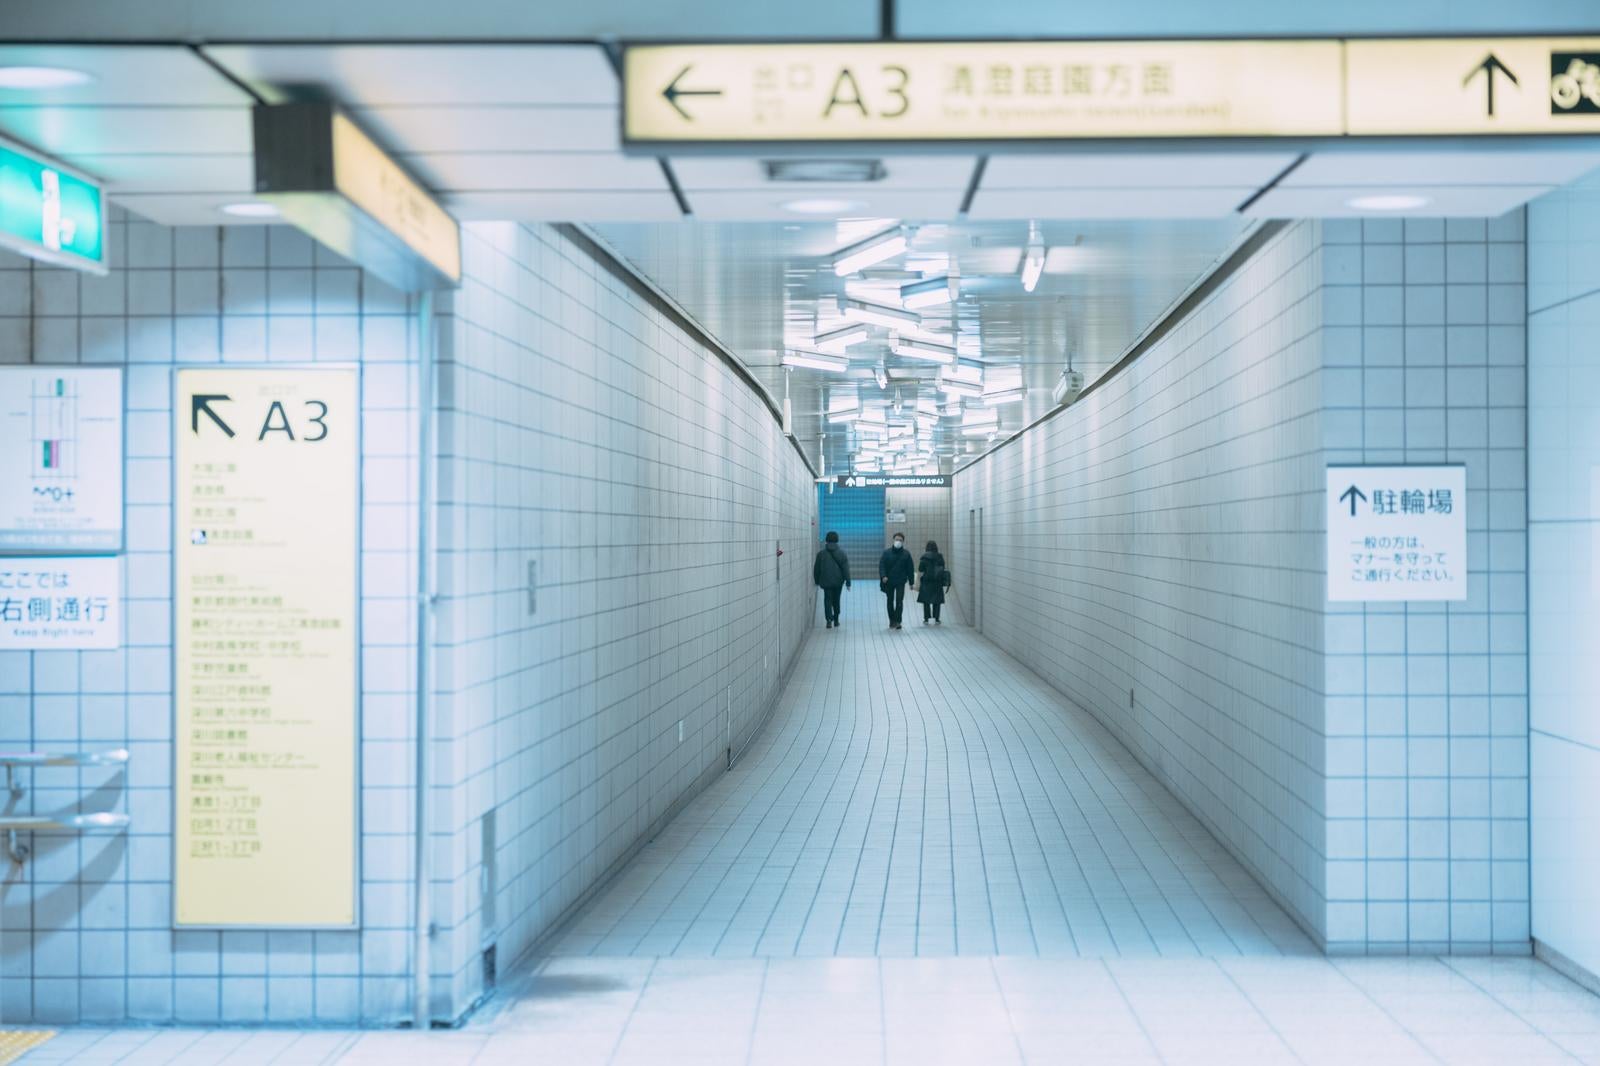 「清澄白河駅からA3出口に向かう」の写真